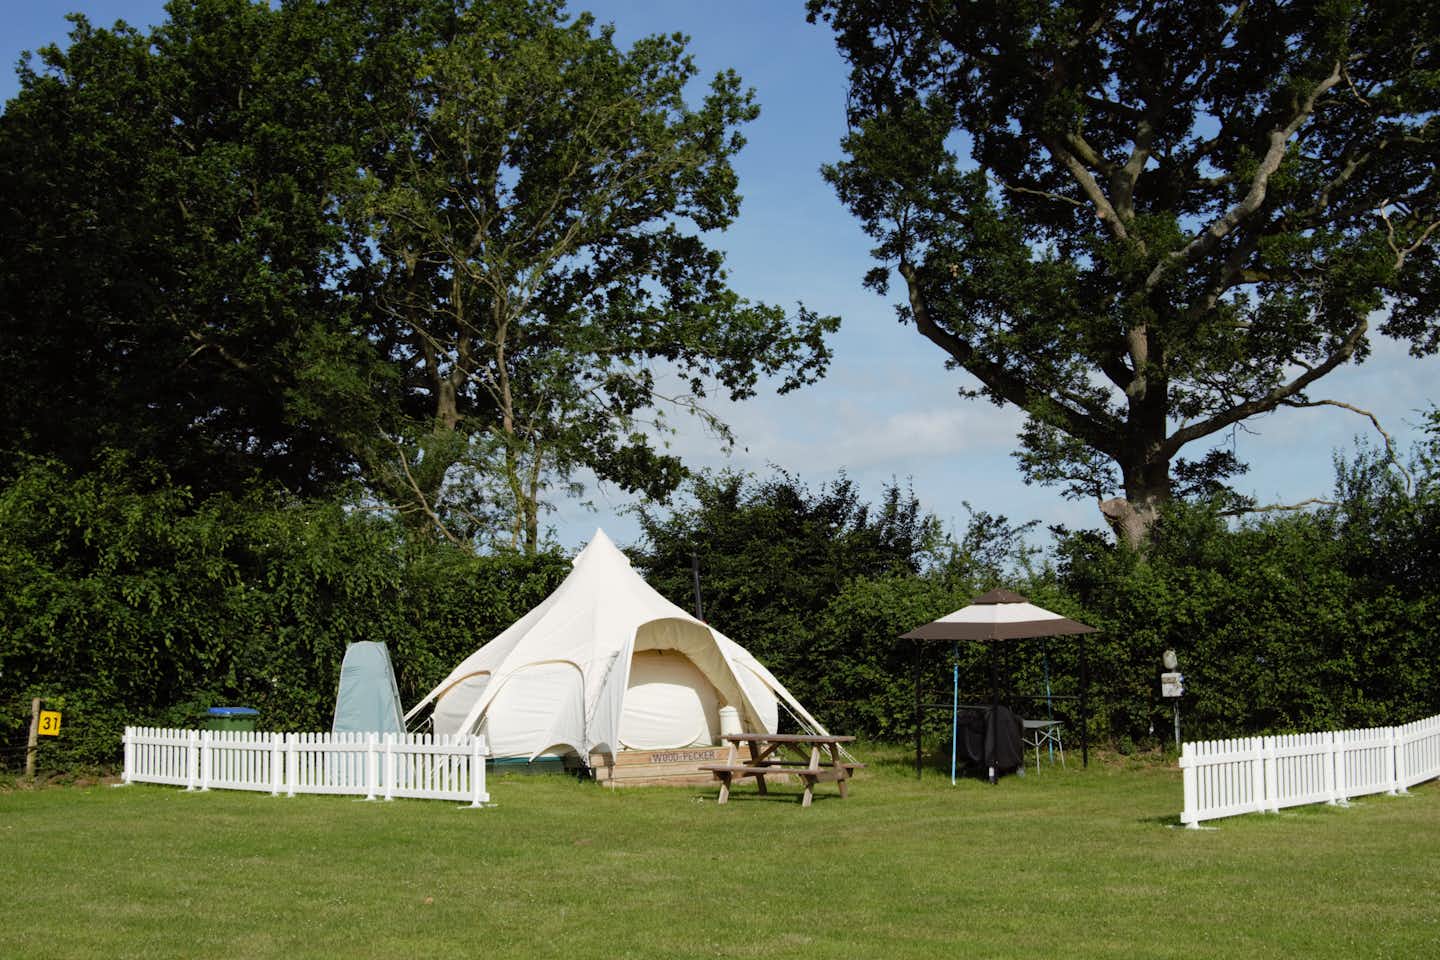 Broadhembury Caravan and Camping Park - Glamping Zelt auf dem Campingplatz mit kleine weissen Zaun darum